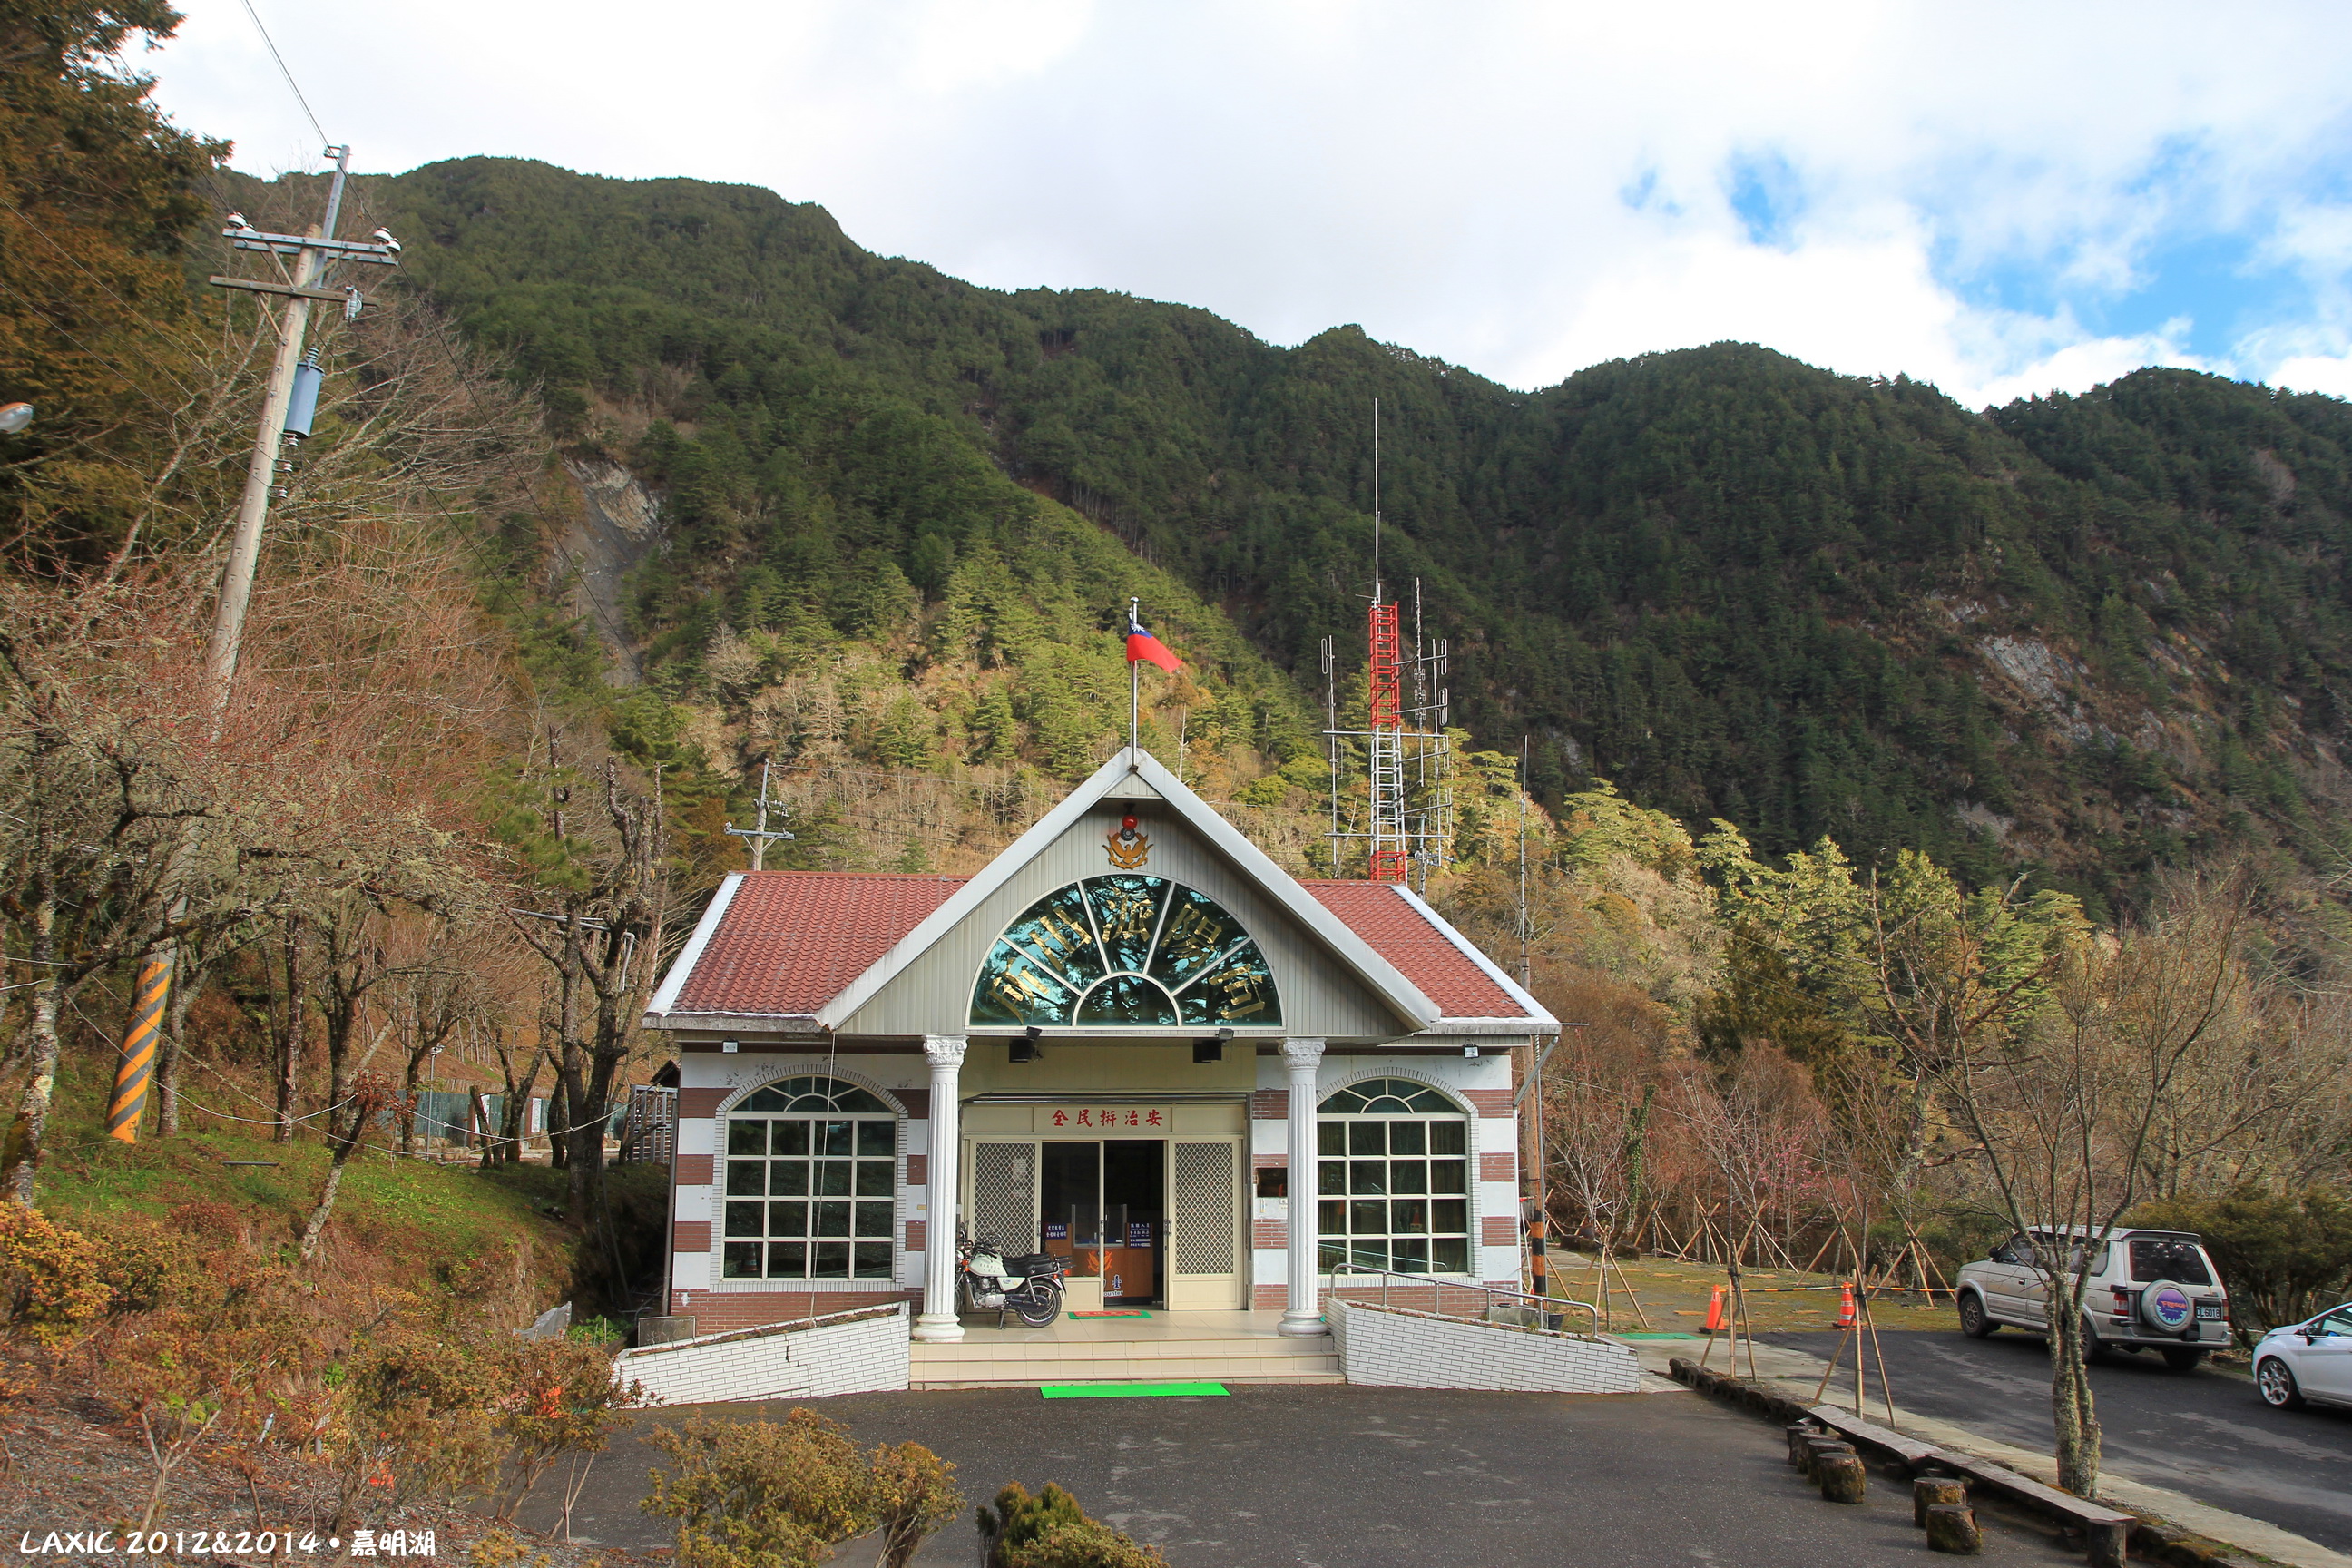 2012&2014˙嘉明湖